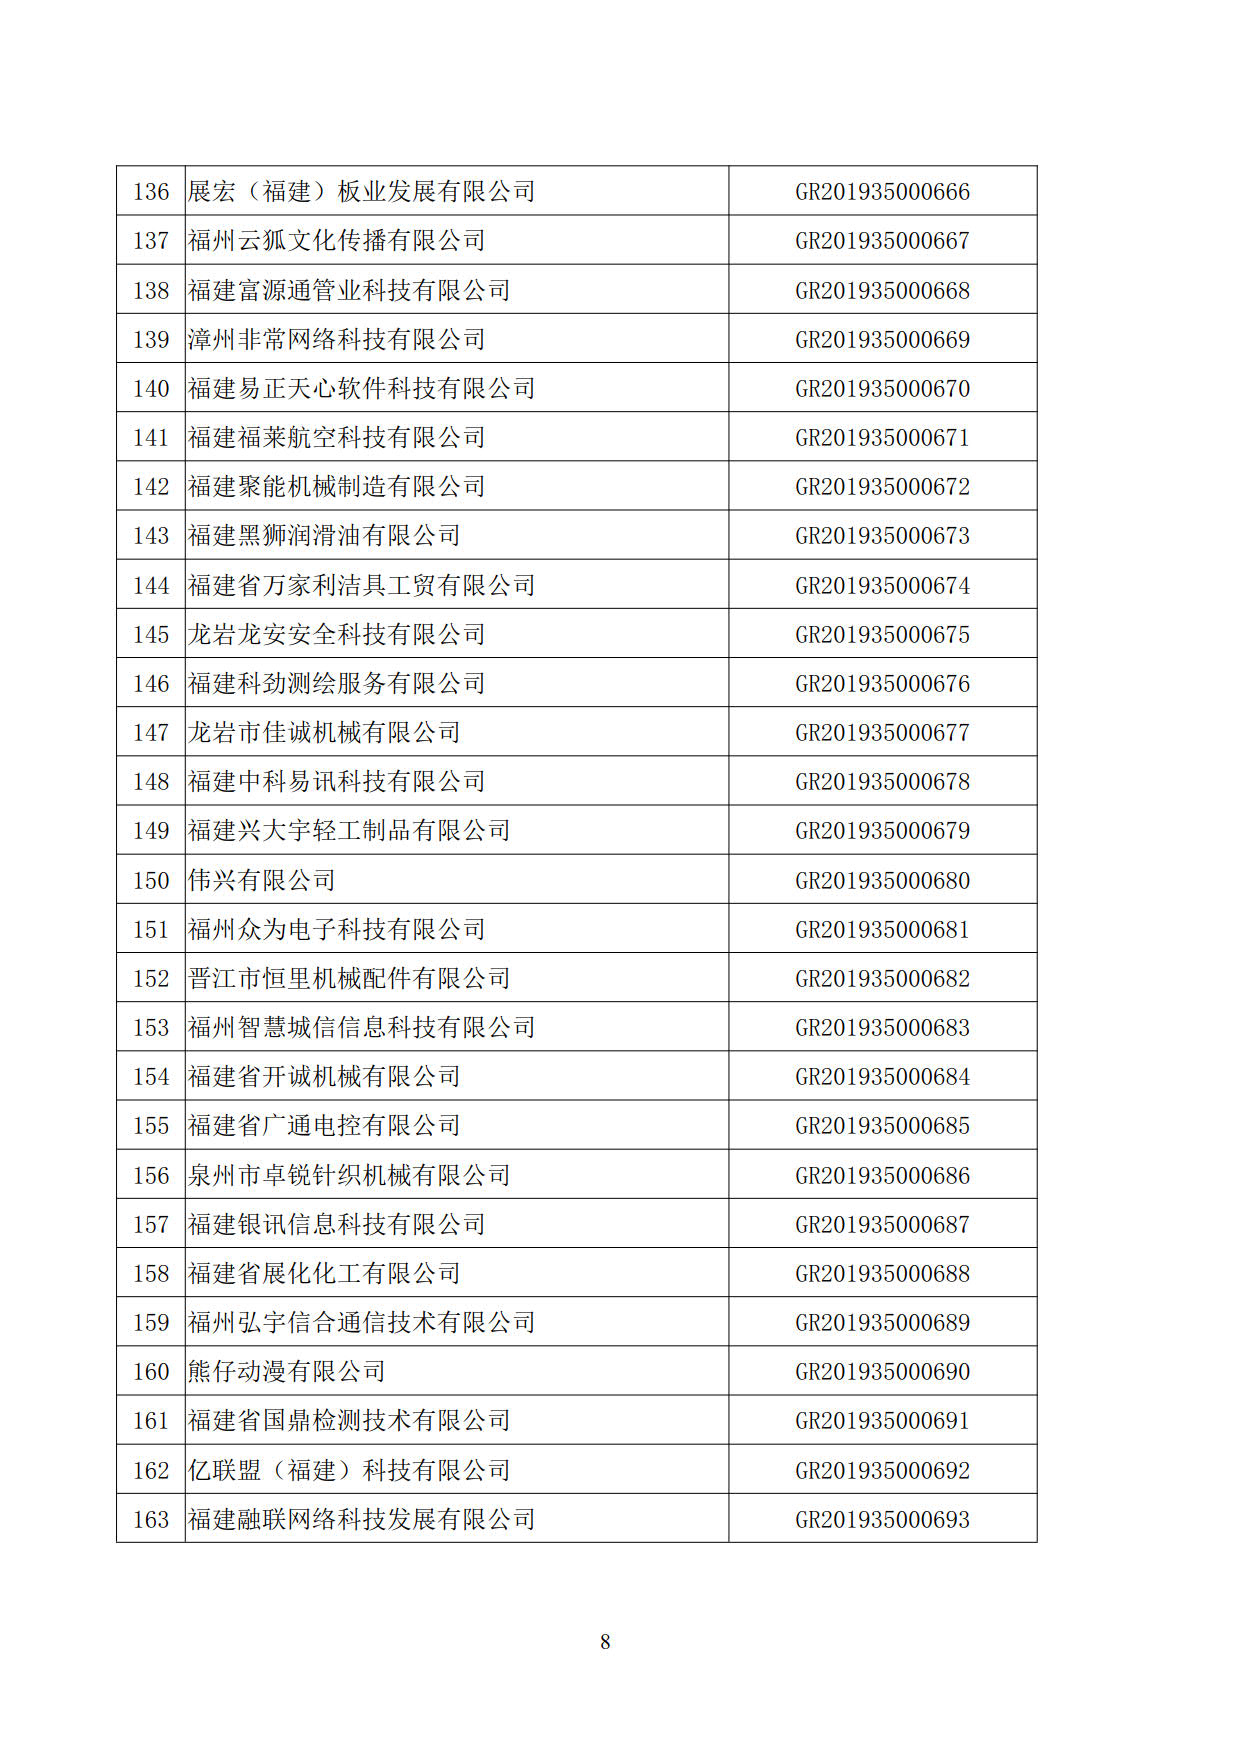 福建省2019年第二批国家高新技术企业认定名单